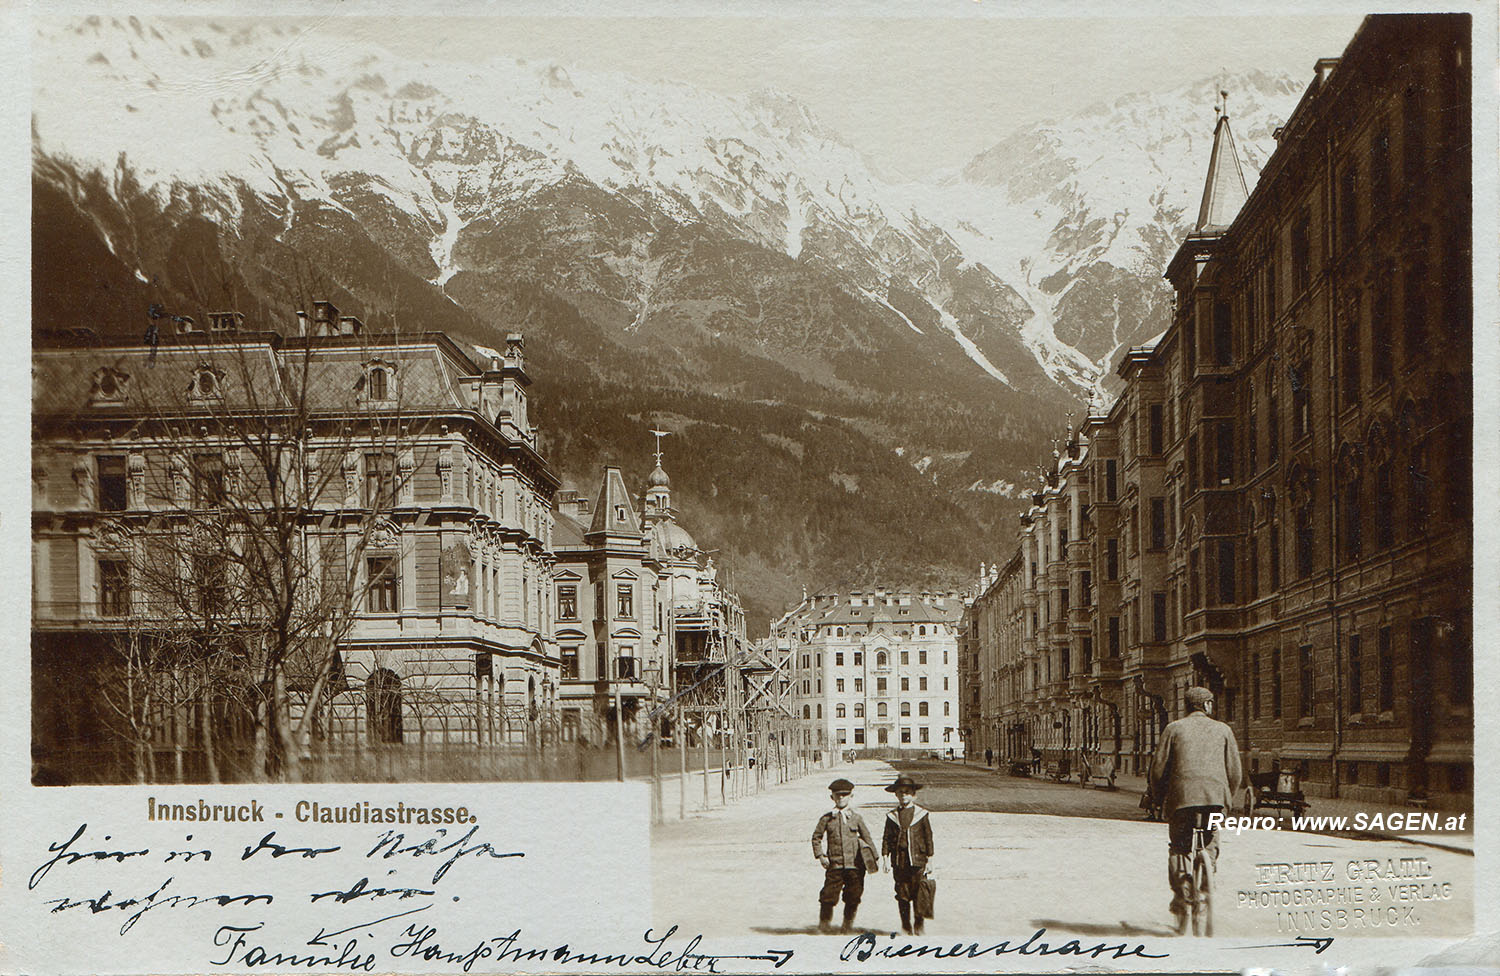 Innsbruck Claudiastraße